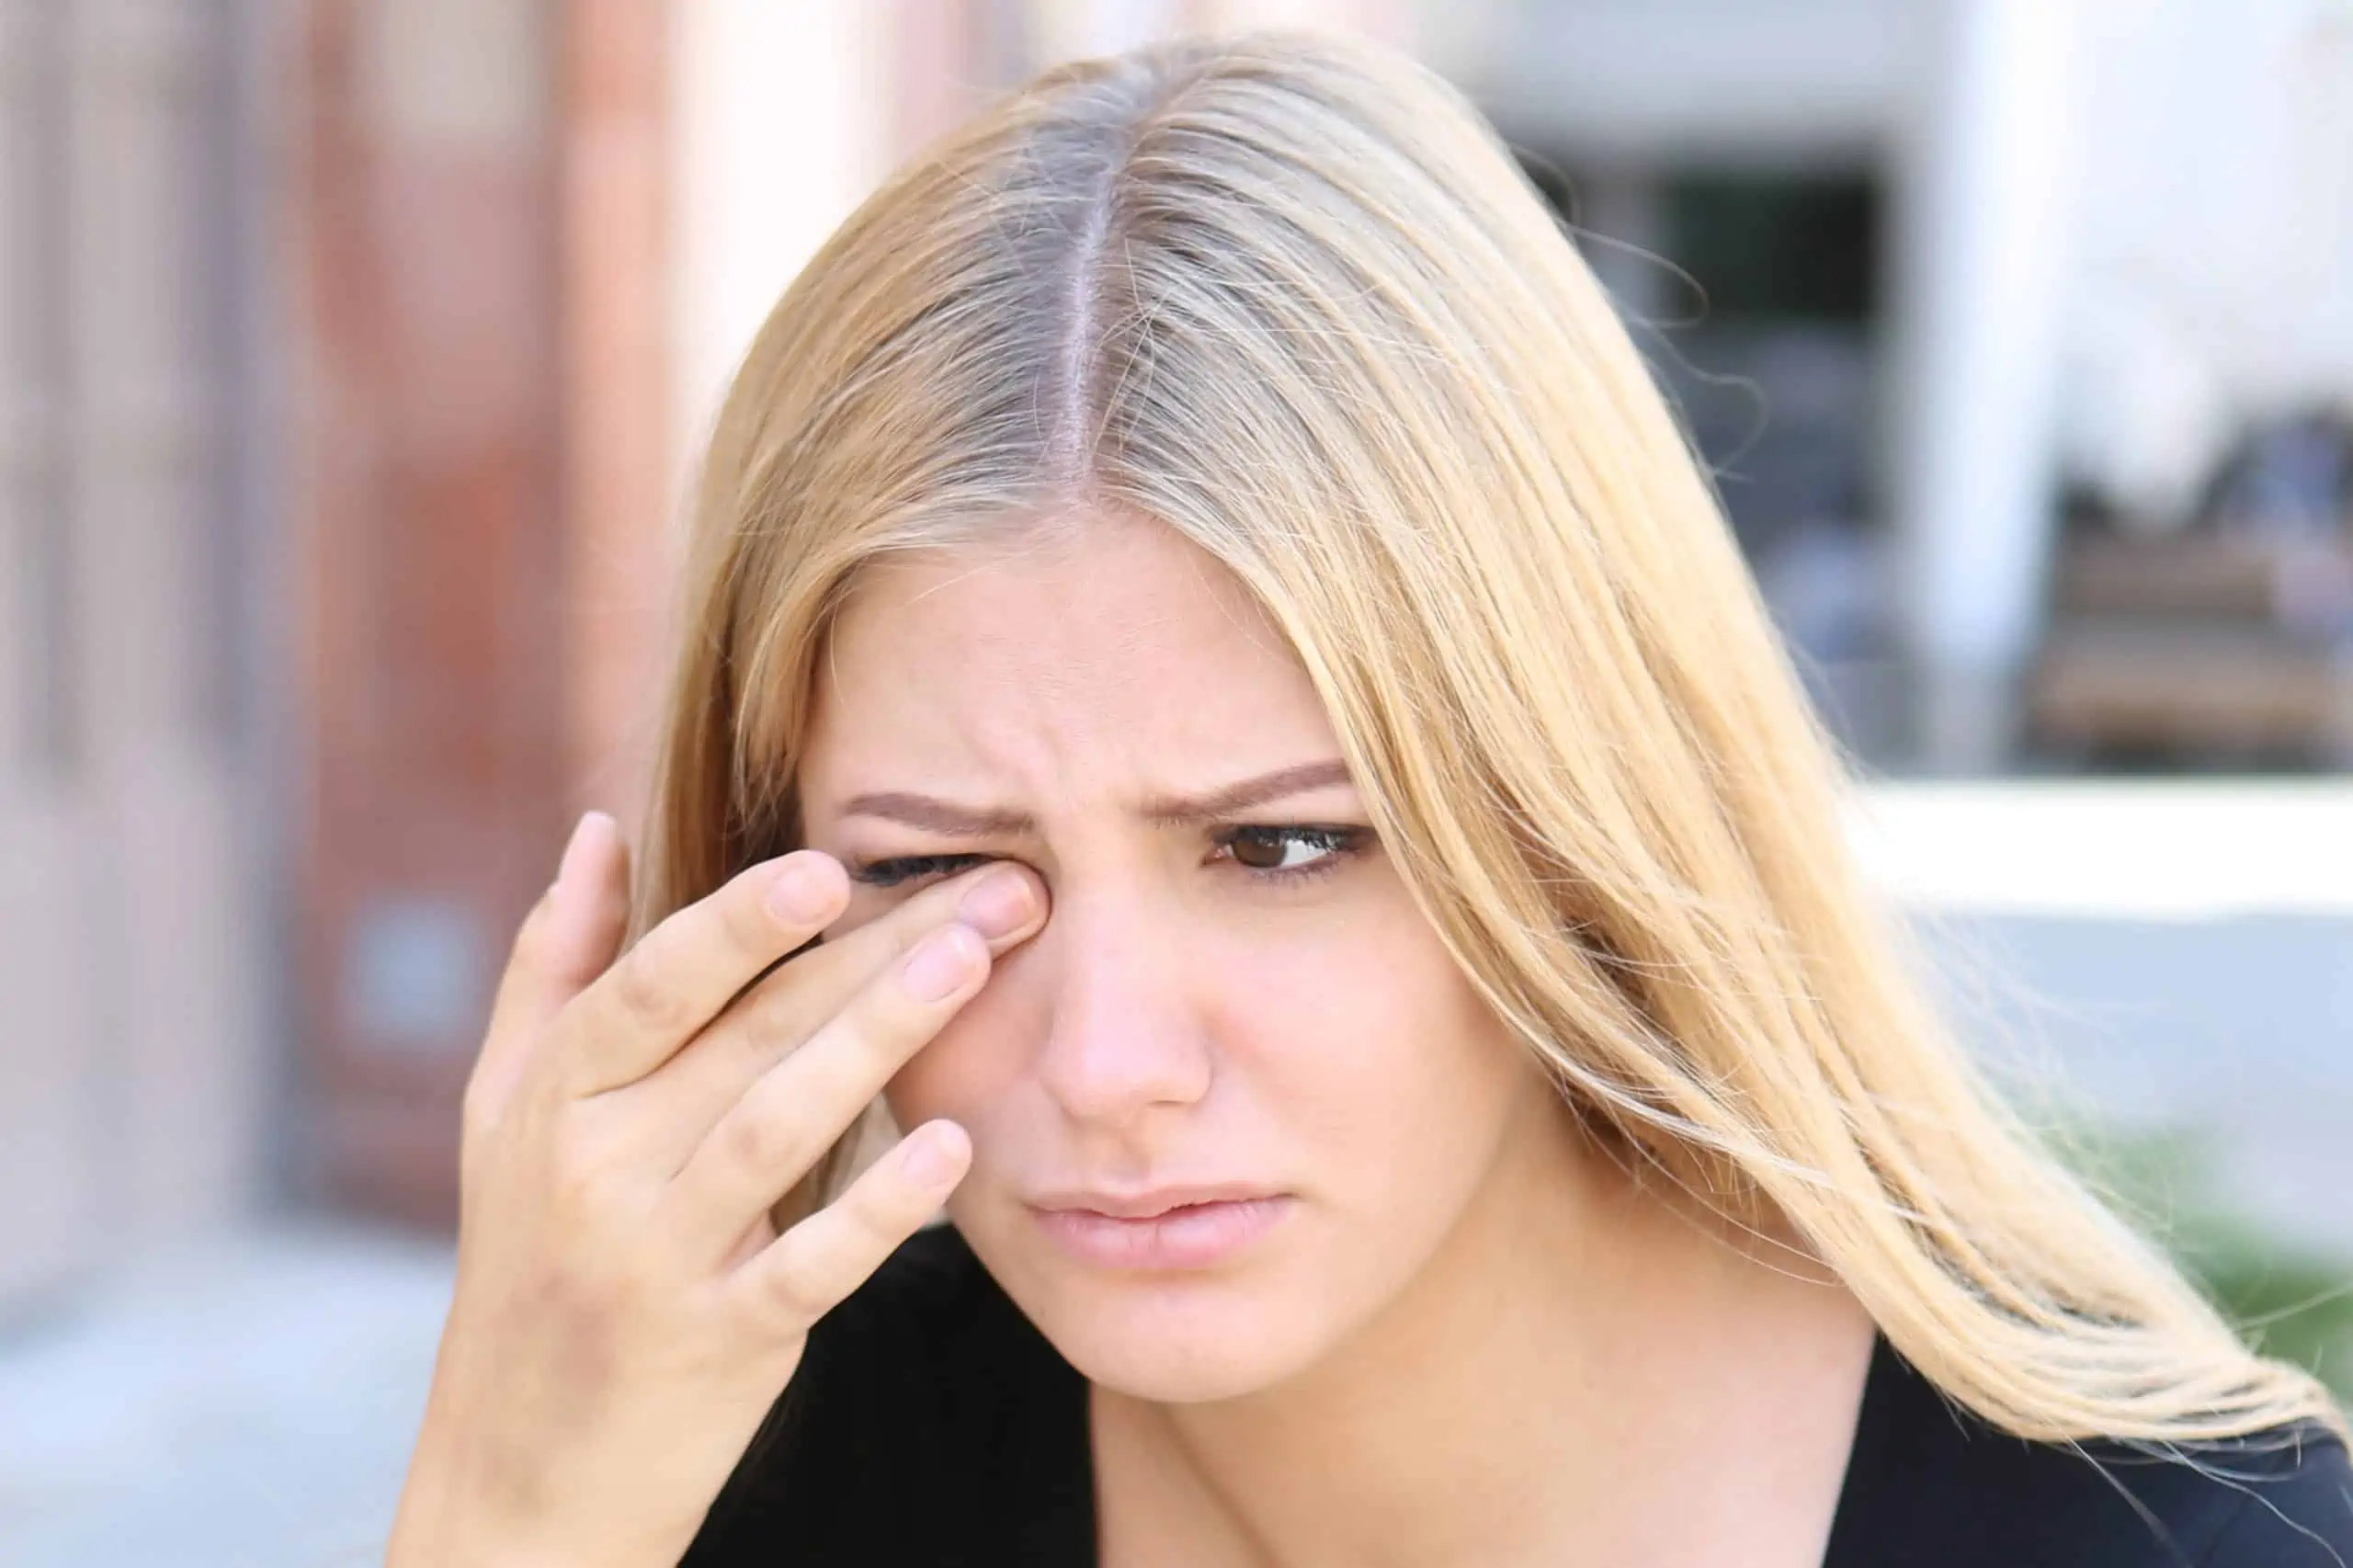 Pijesak u očima – uzrok, simptomi, liječenje